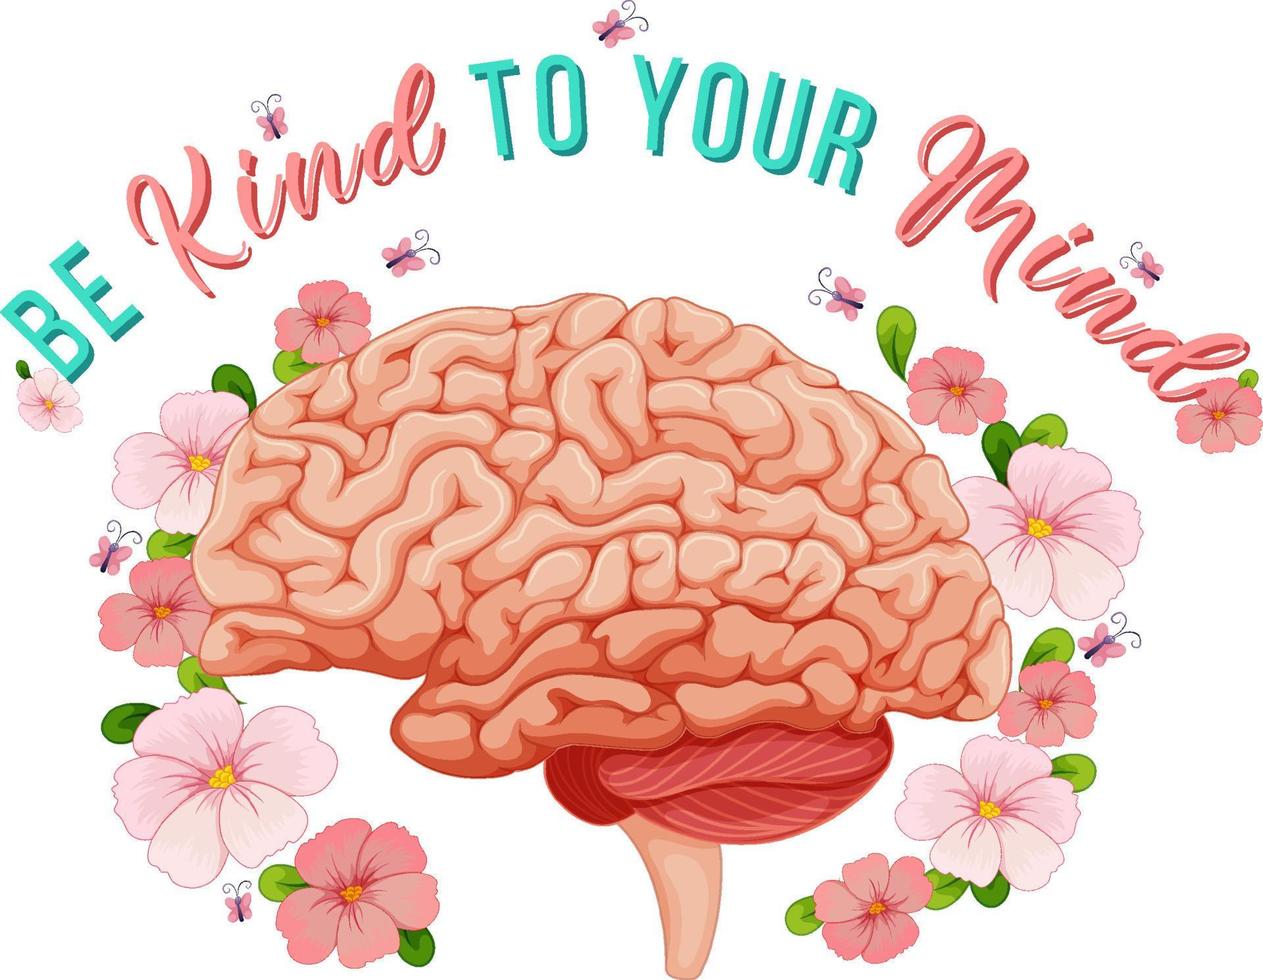 Posterdesign mit menschlichem Gehirn und Blumen vektor